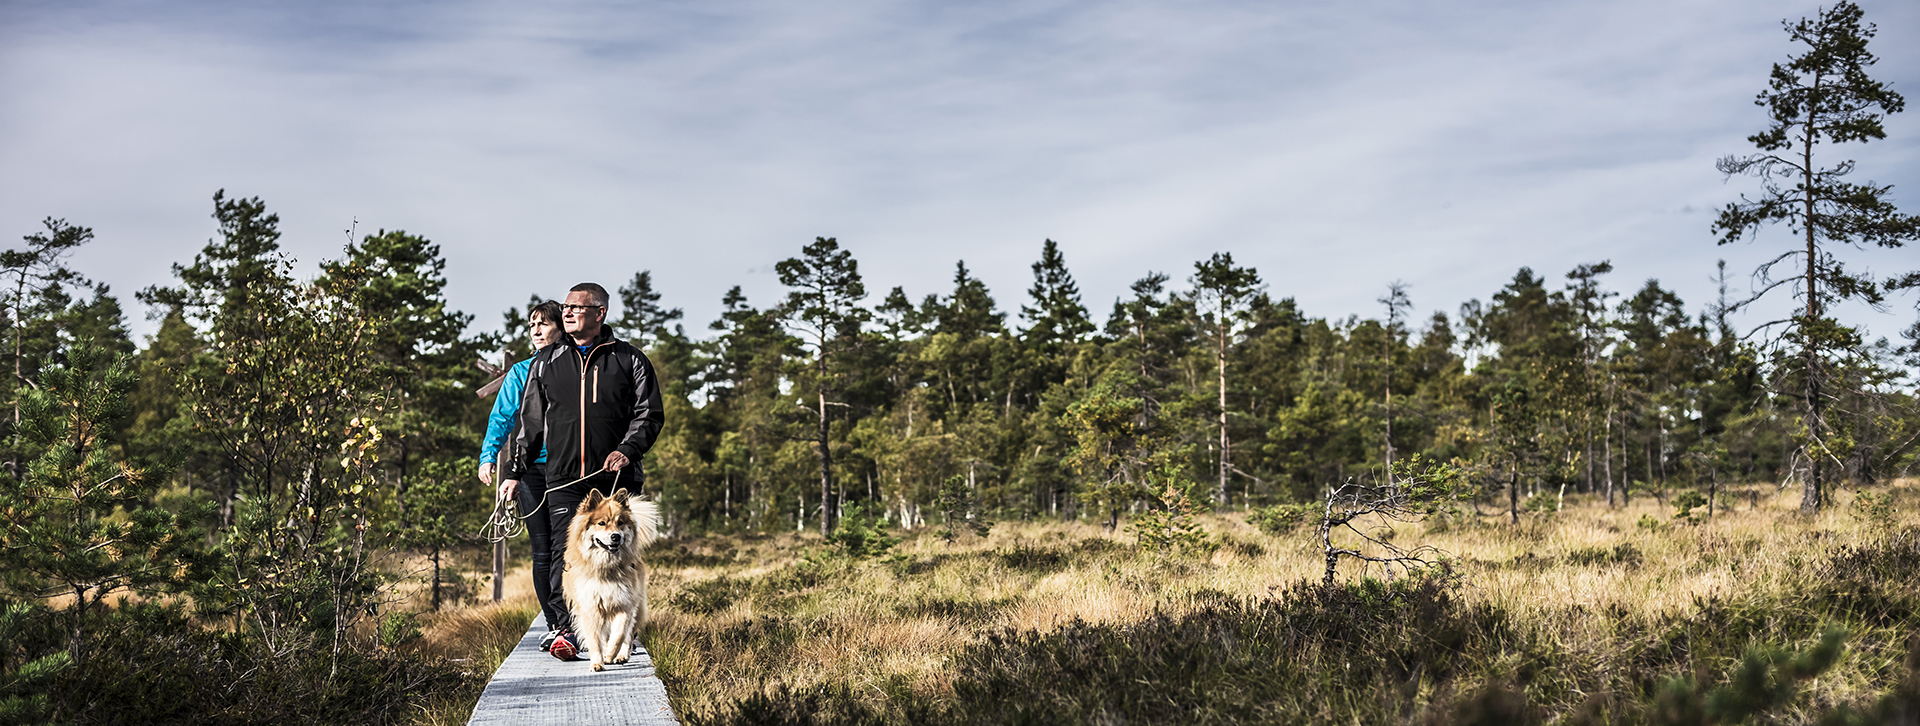 Bo i Ulricehamn - Par med hund vandrar på Komosse